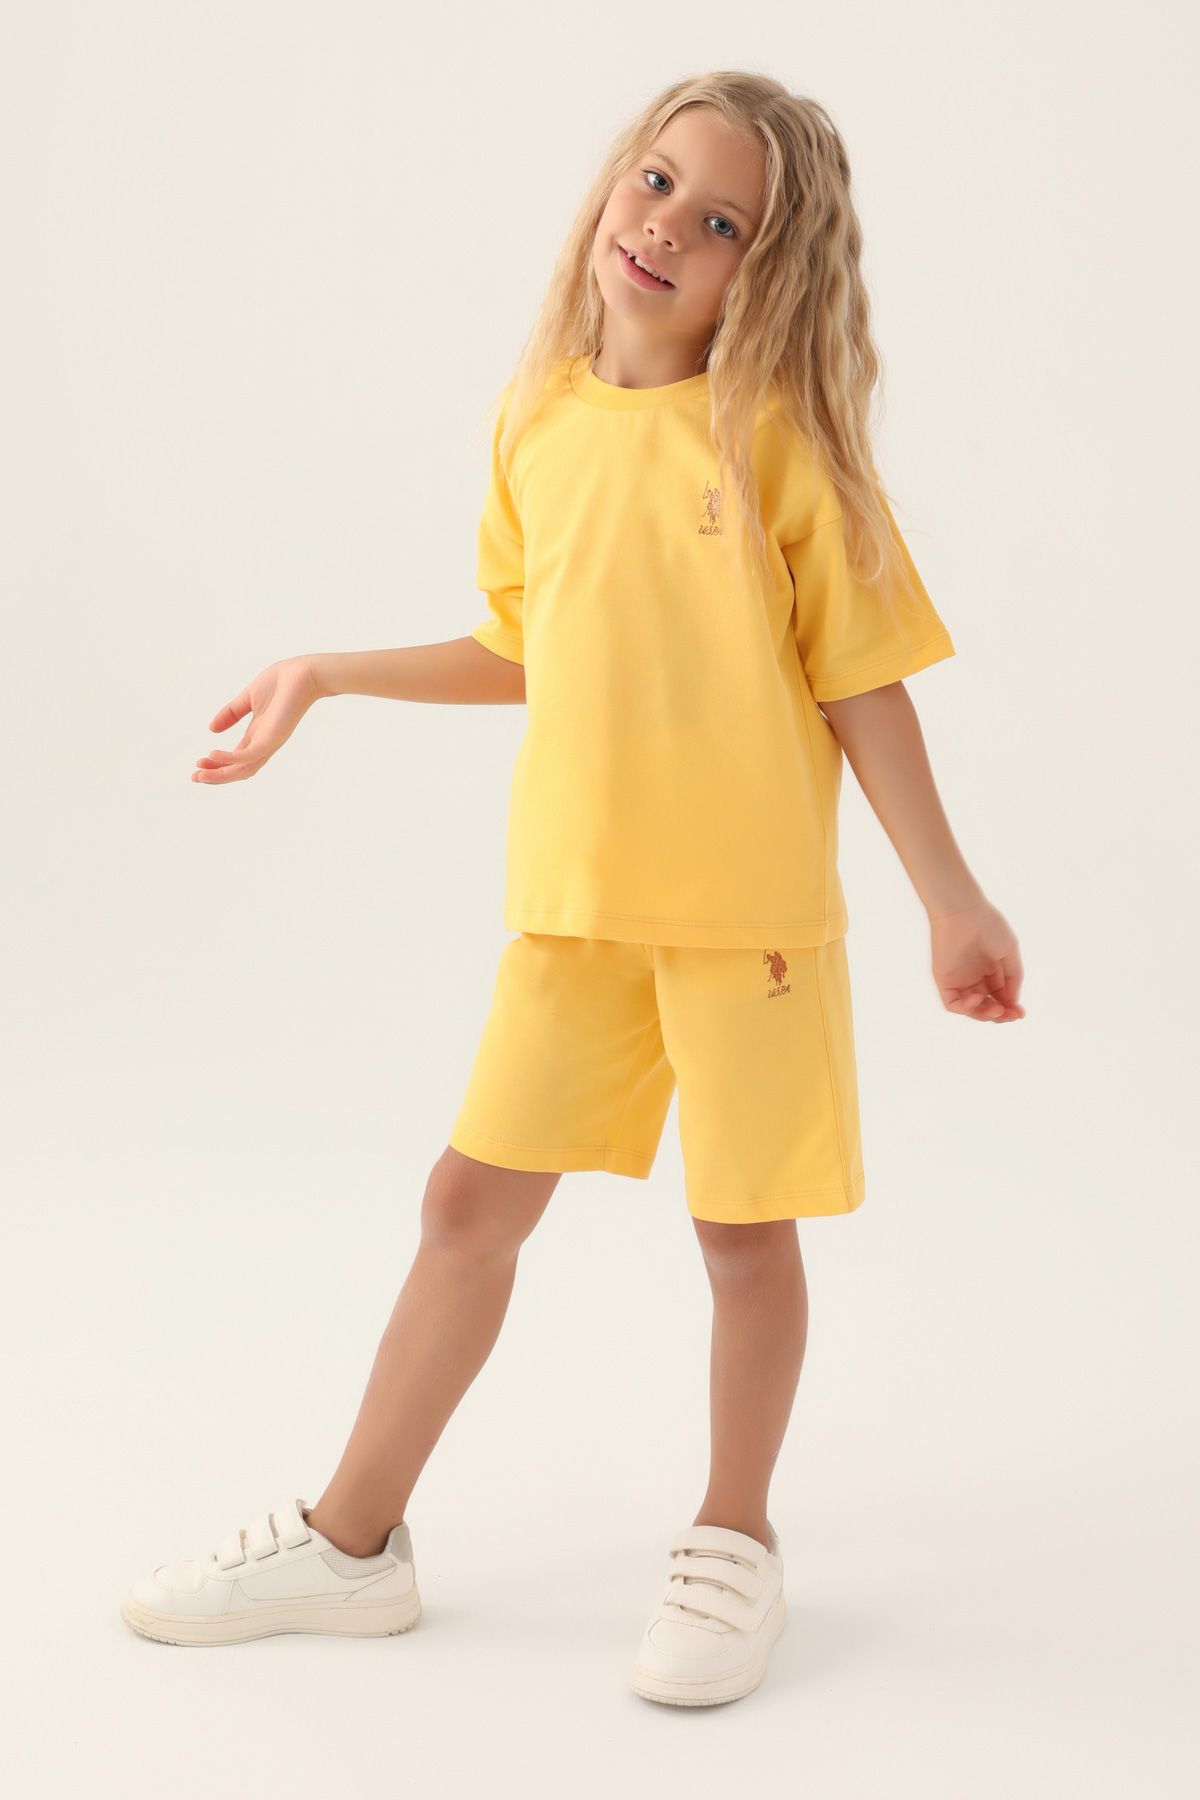 Костюм повседневный детский U.S. POLO Assn. US1822-V1, желтый, 110 костюм повседневный детский u s polo assn us1822 v1 розовая пудра 122